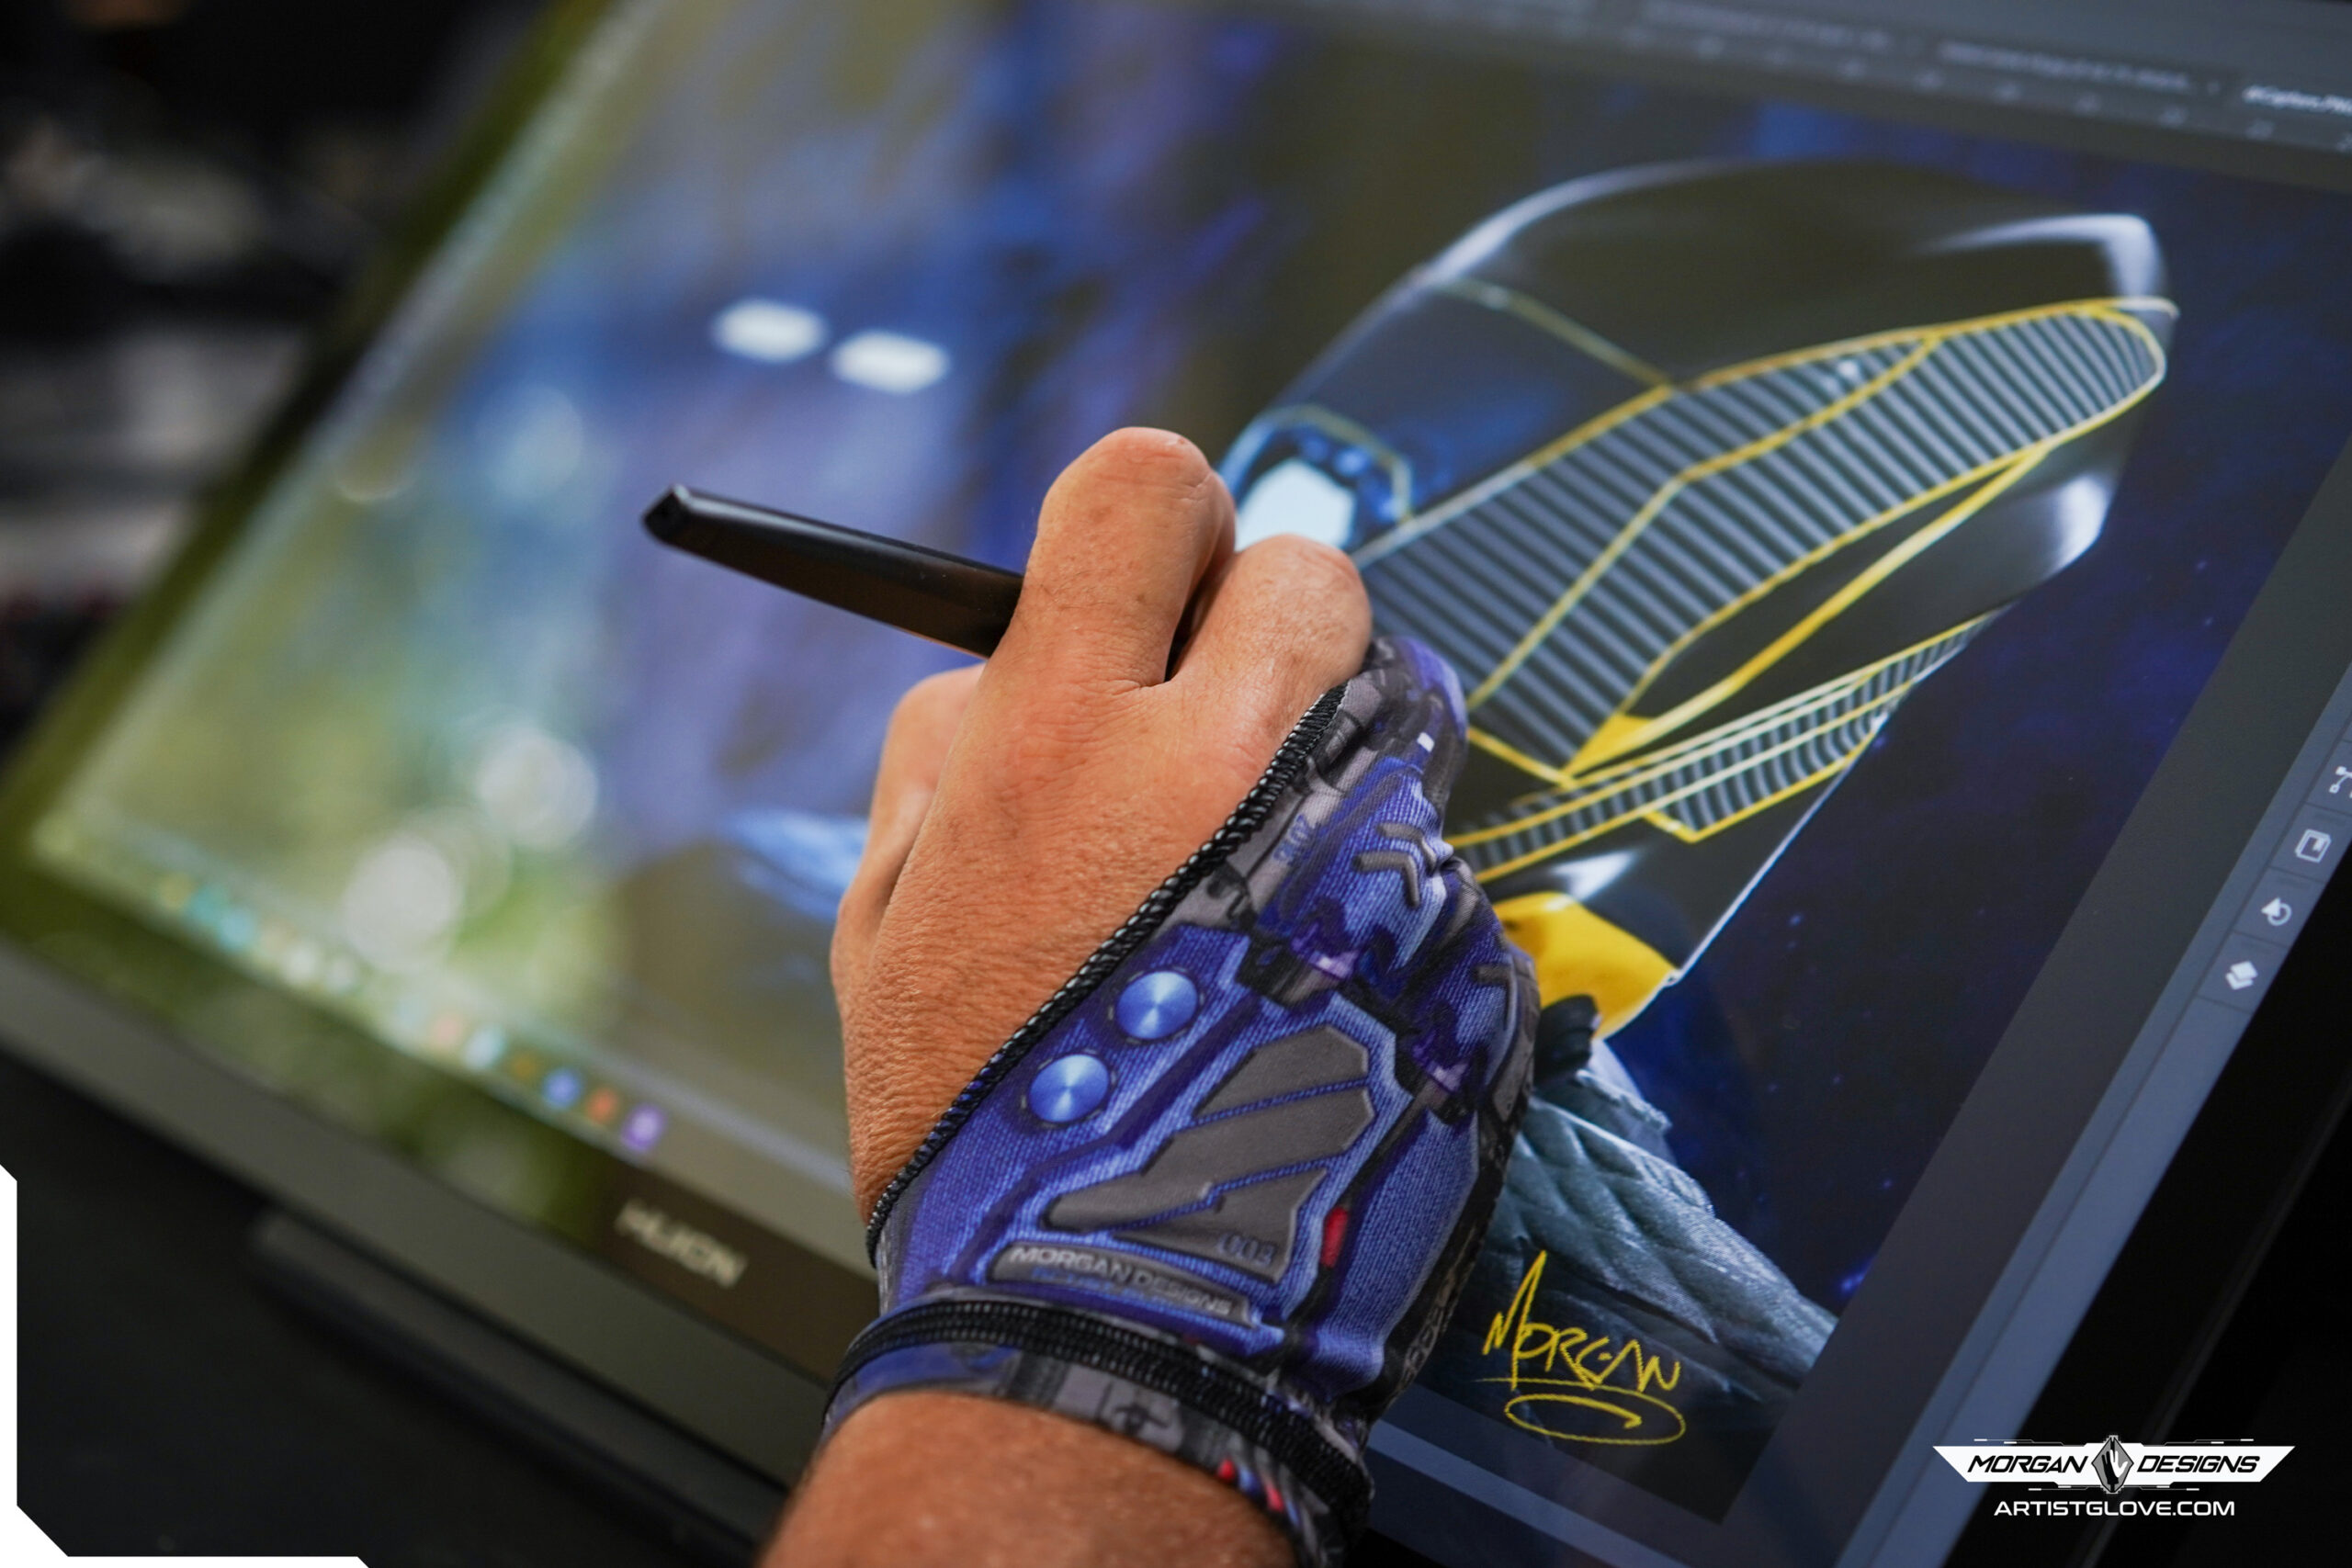 Shop Drawing Gloves For Tablet online